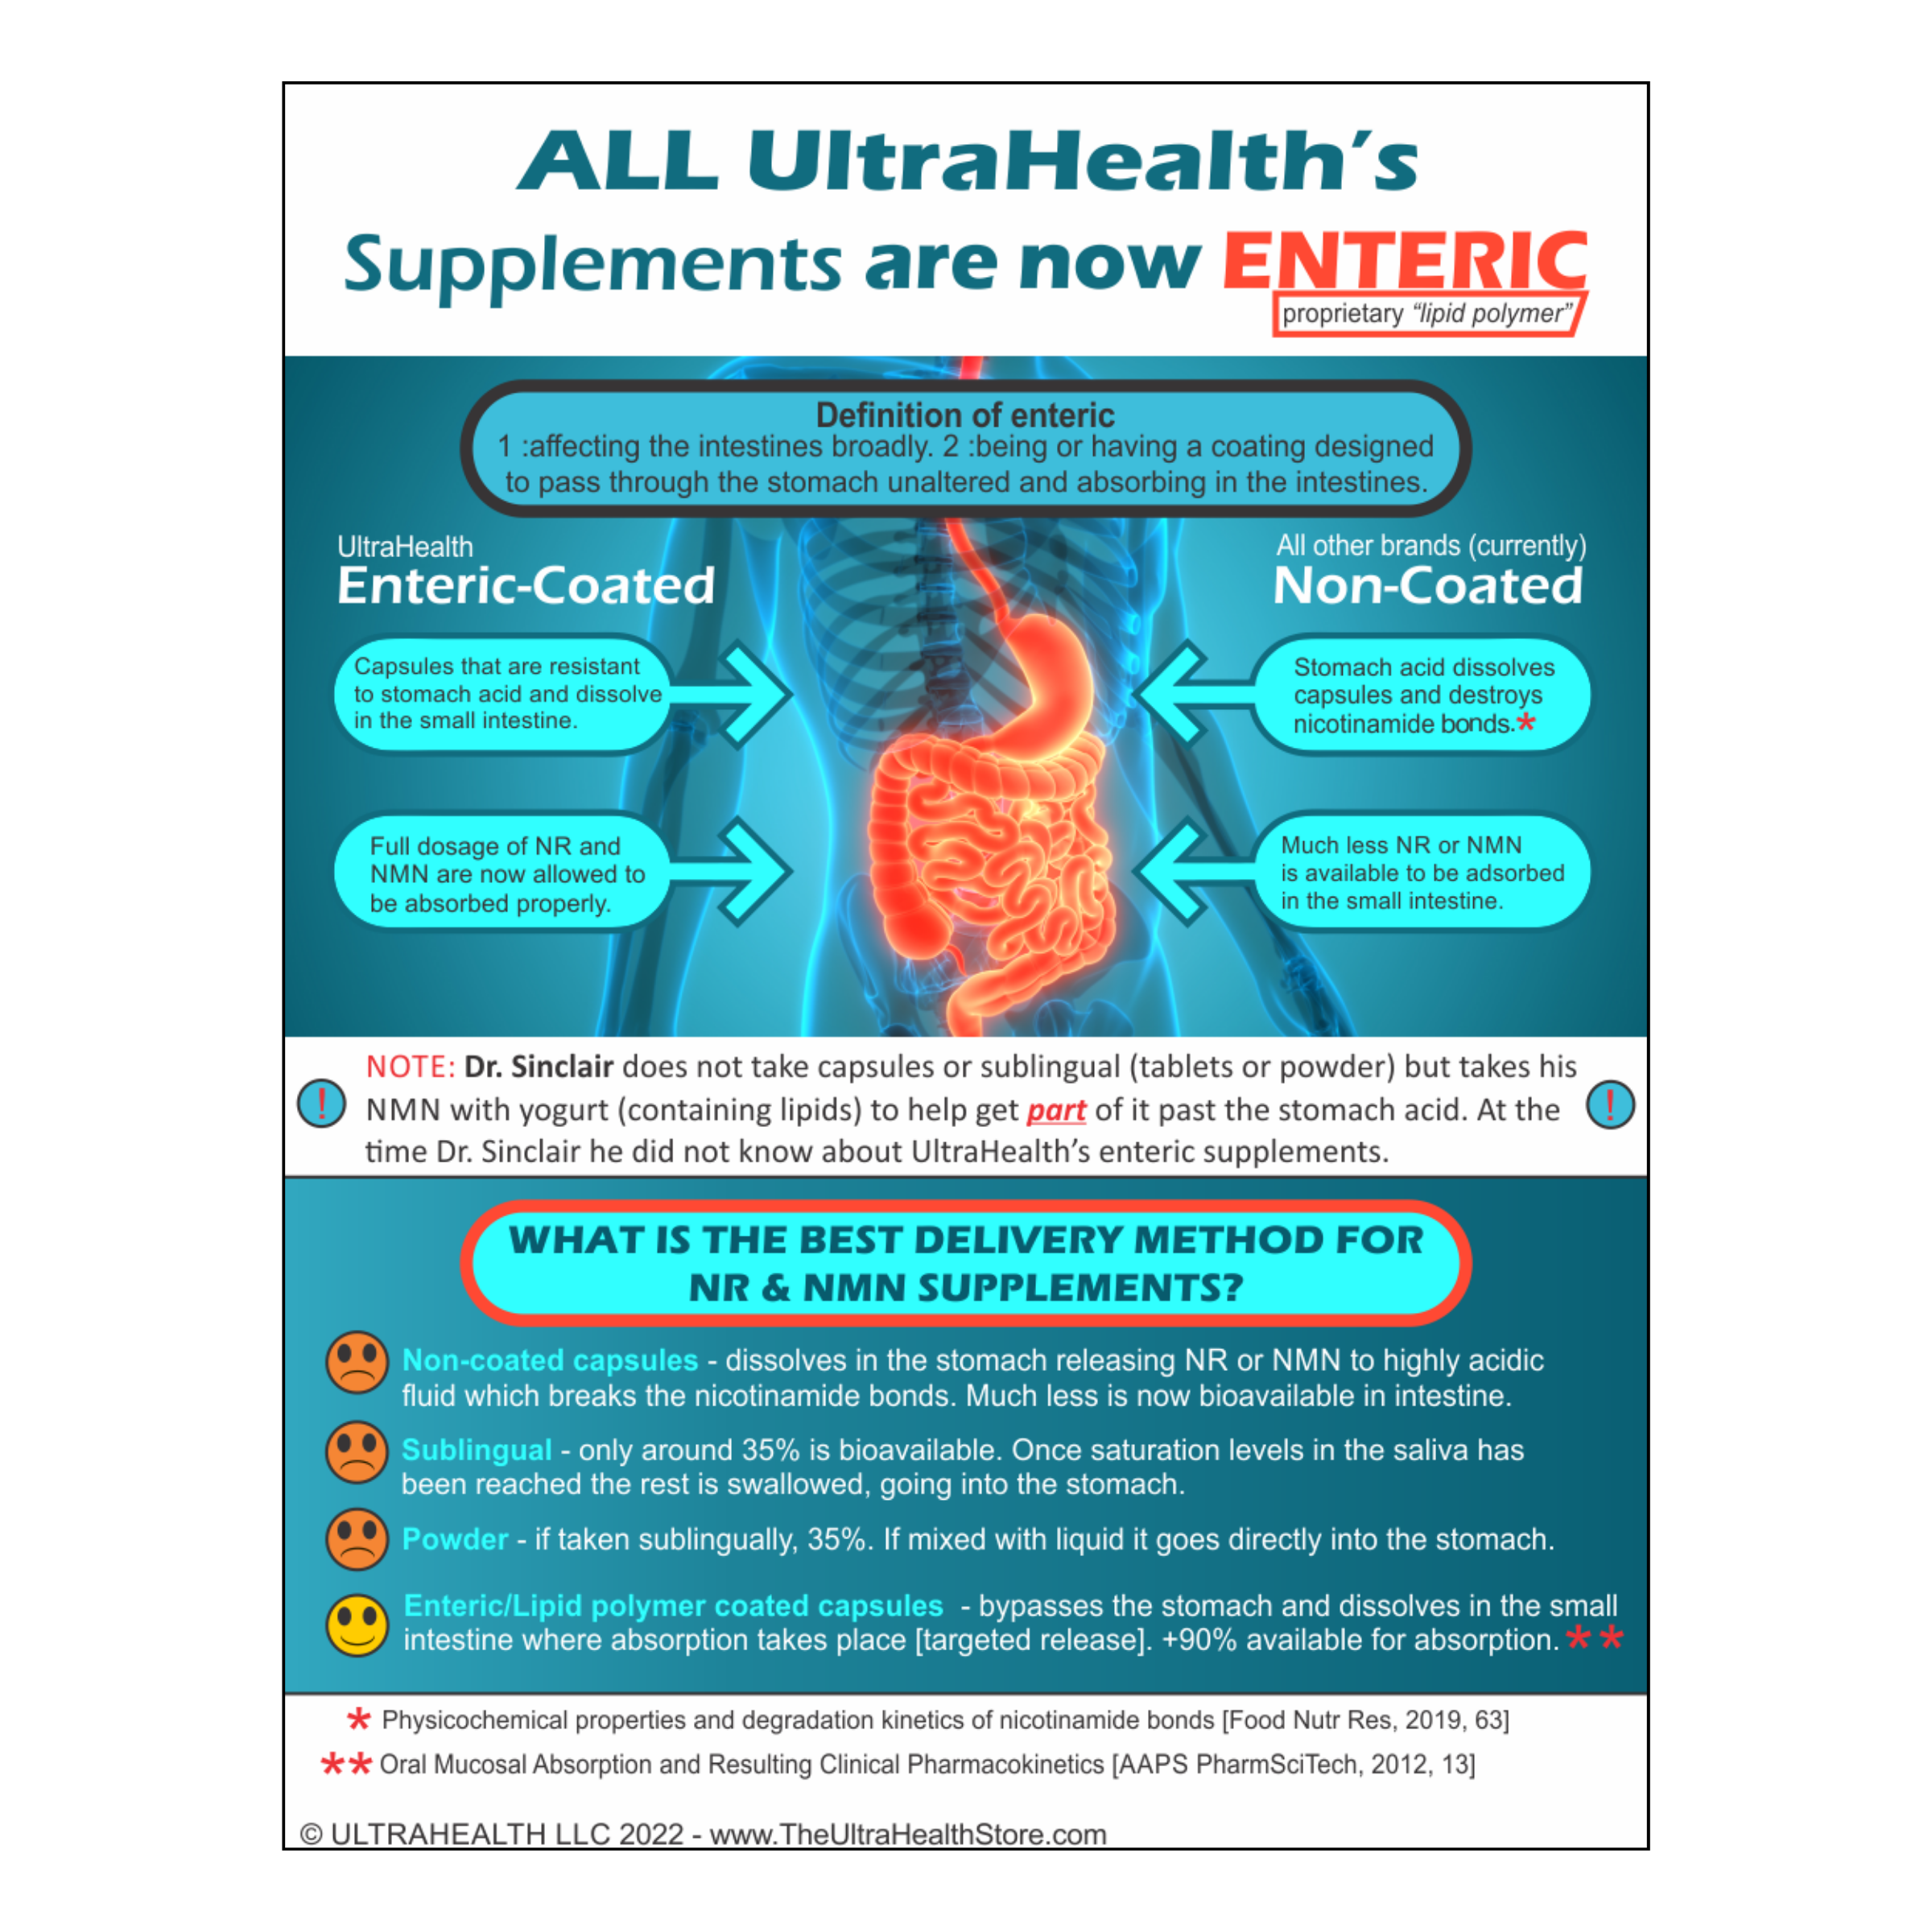 Best Spermidine Supplement - 60-day supply, 60E Liposomal